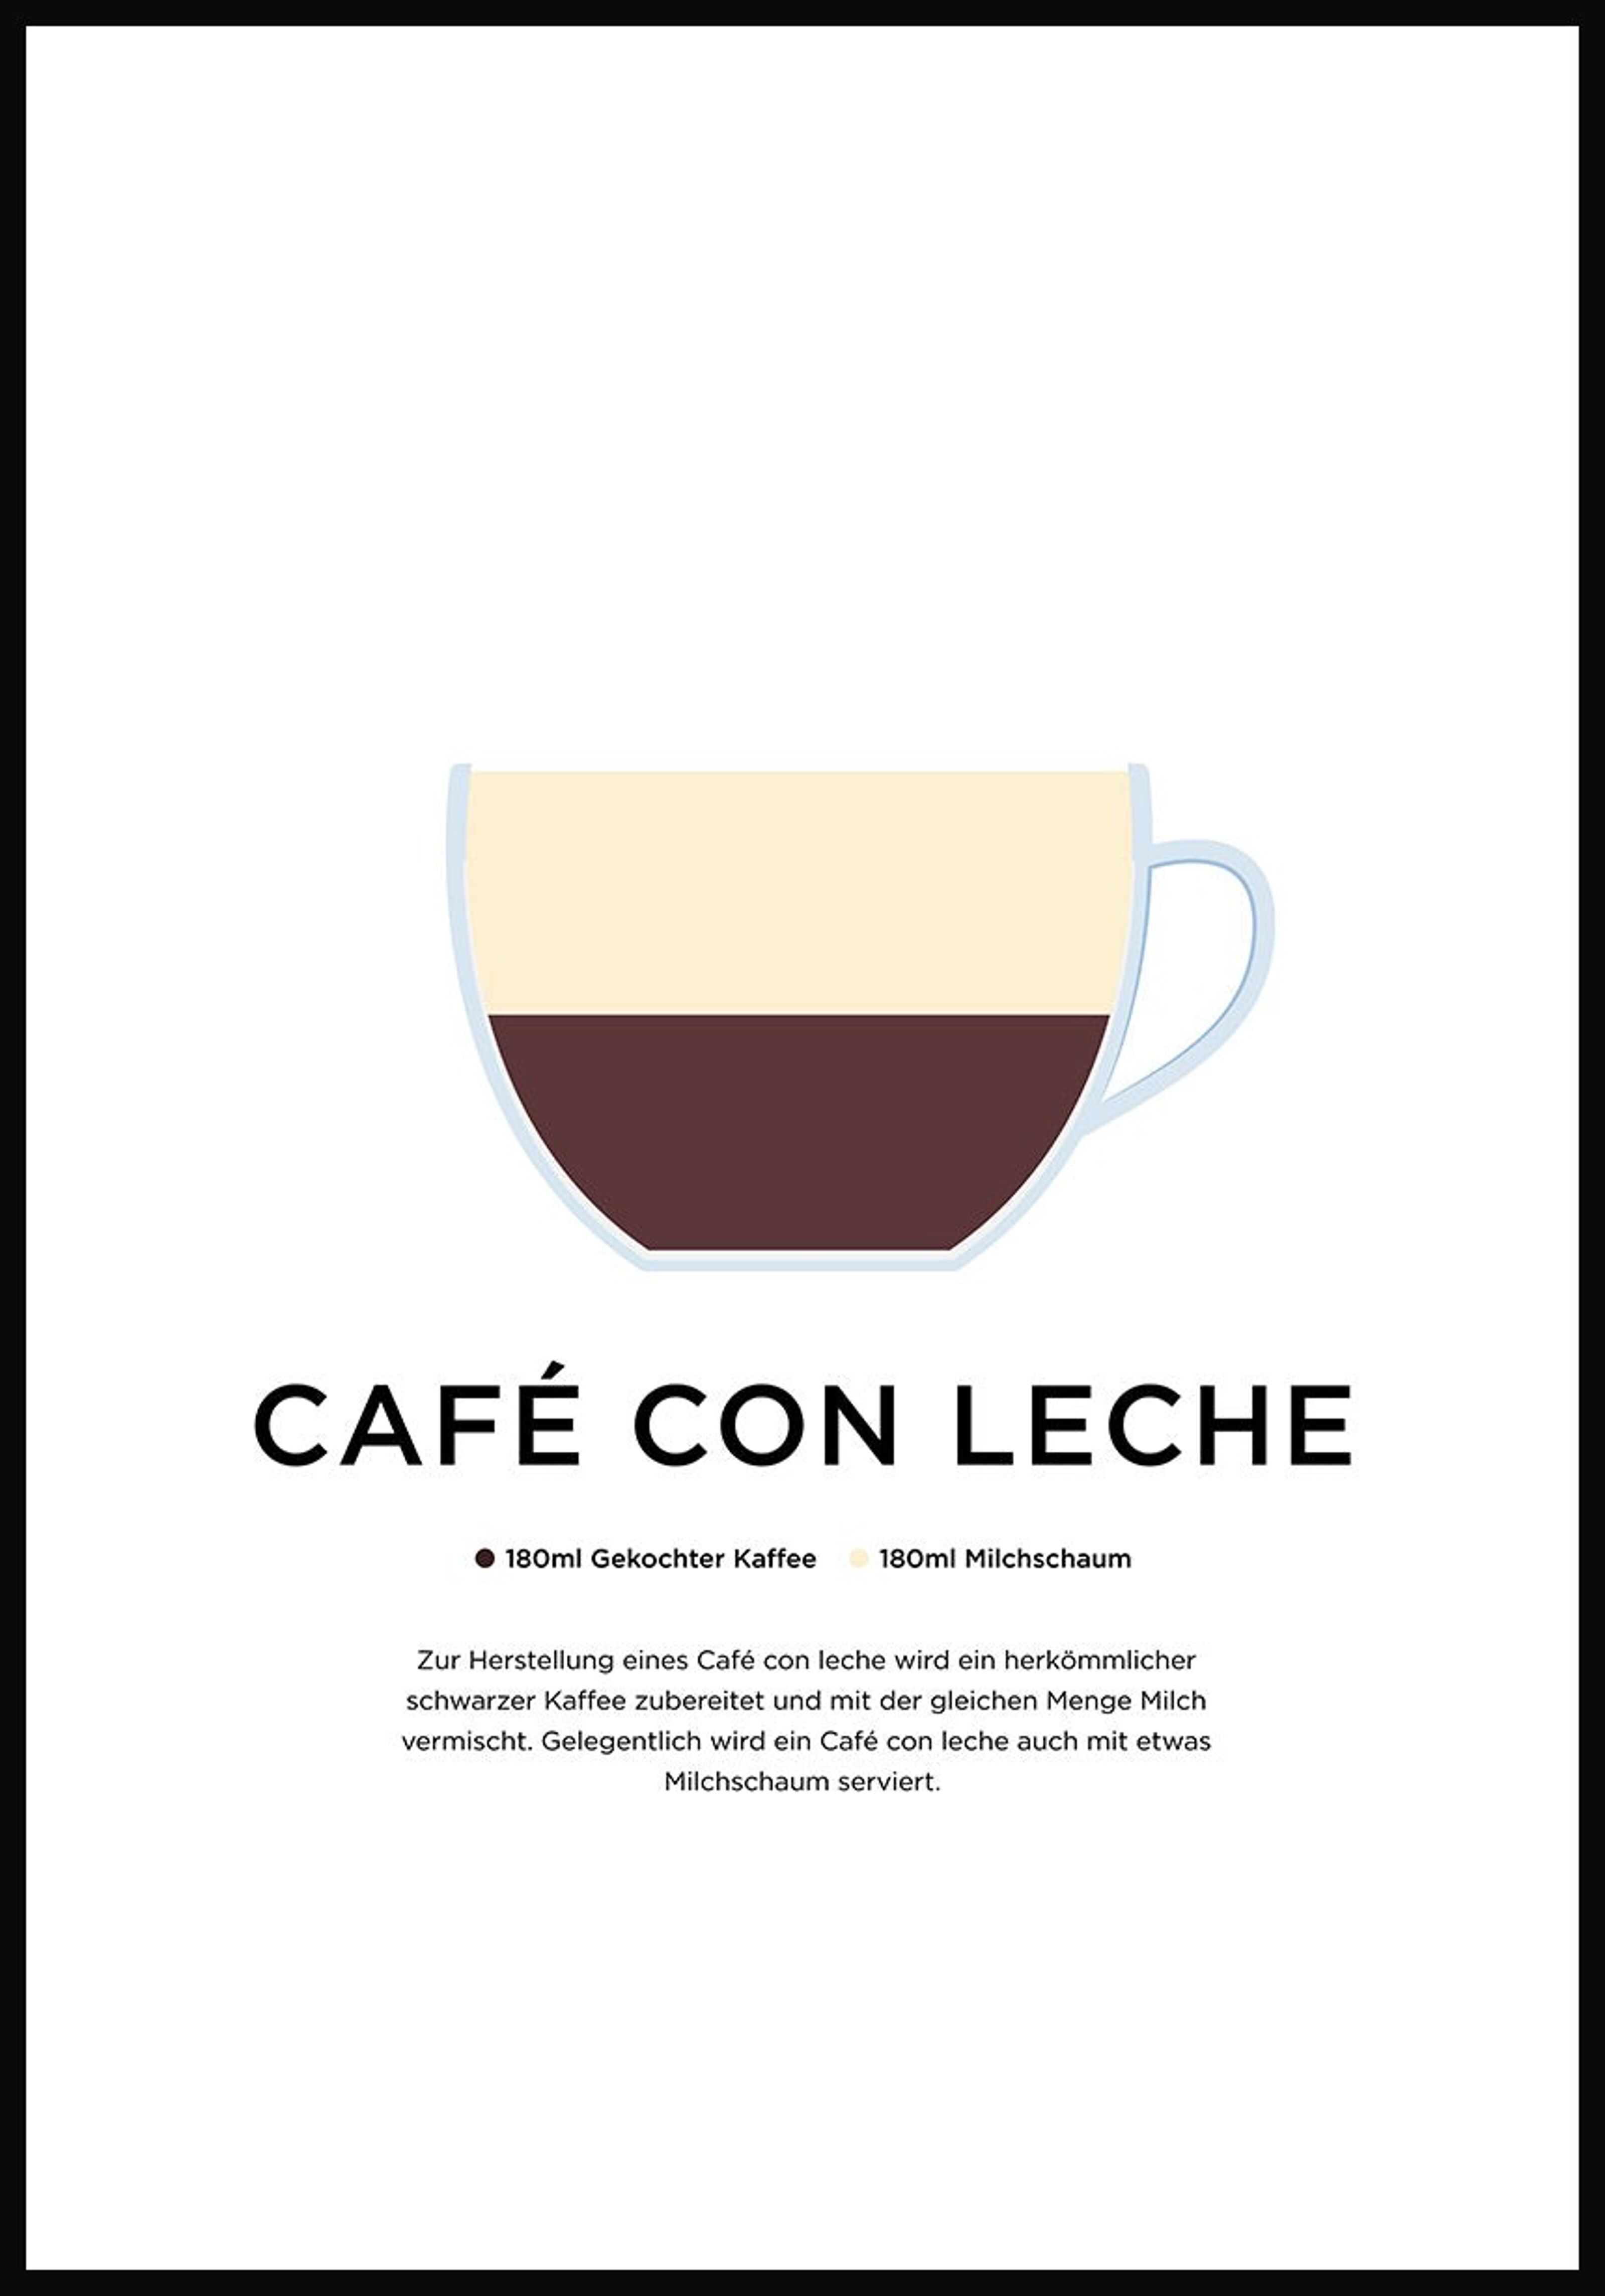 preparation Buy (German) with leche wholesale Café con poster 50 cm 40 - x